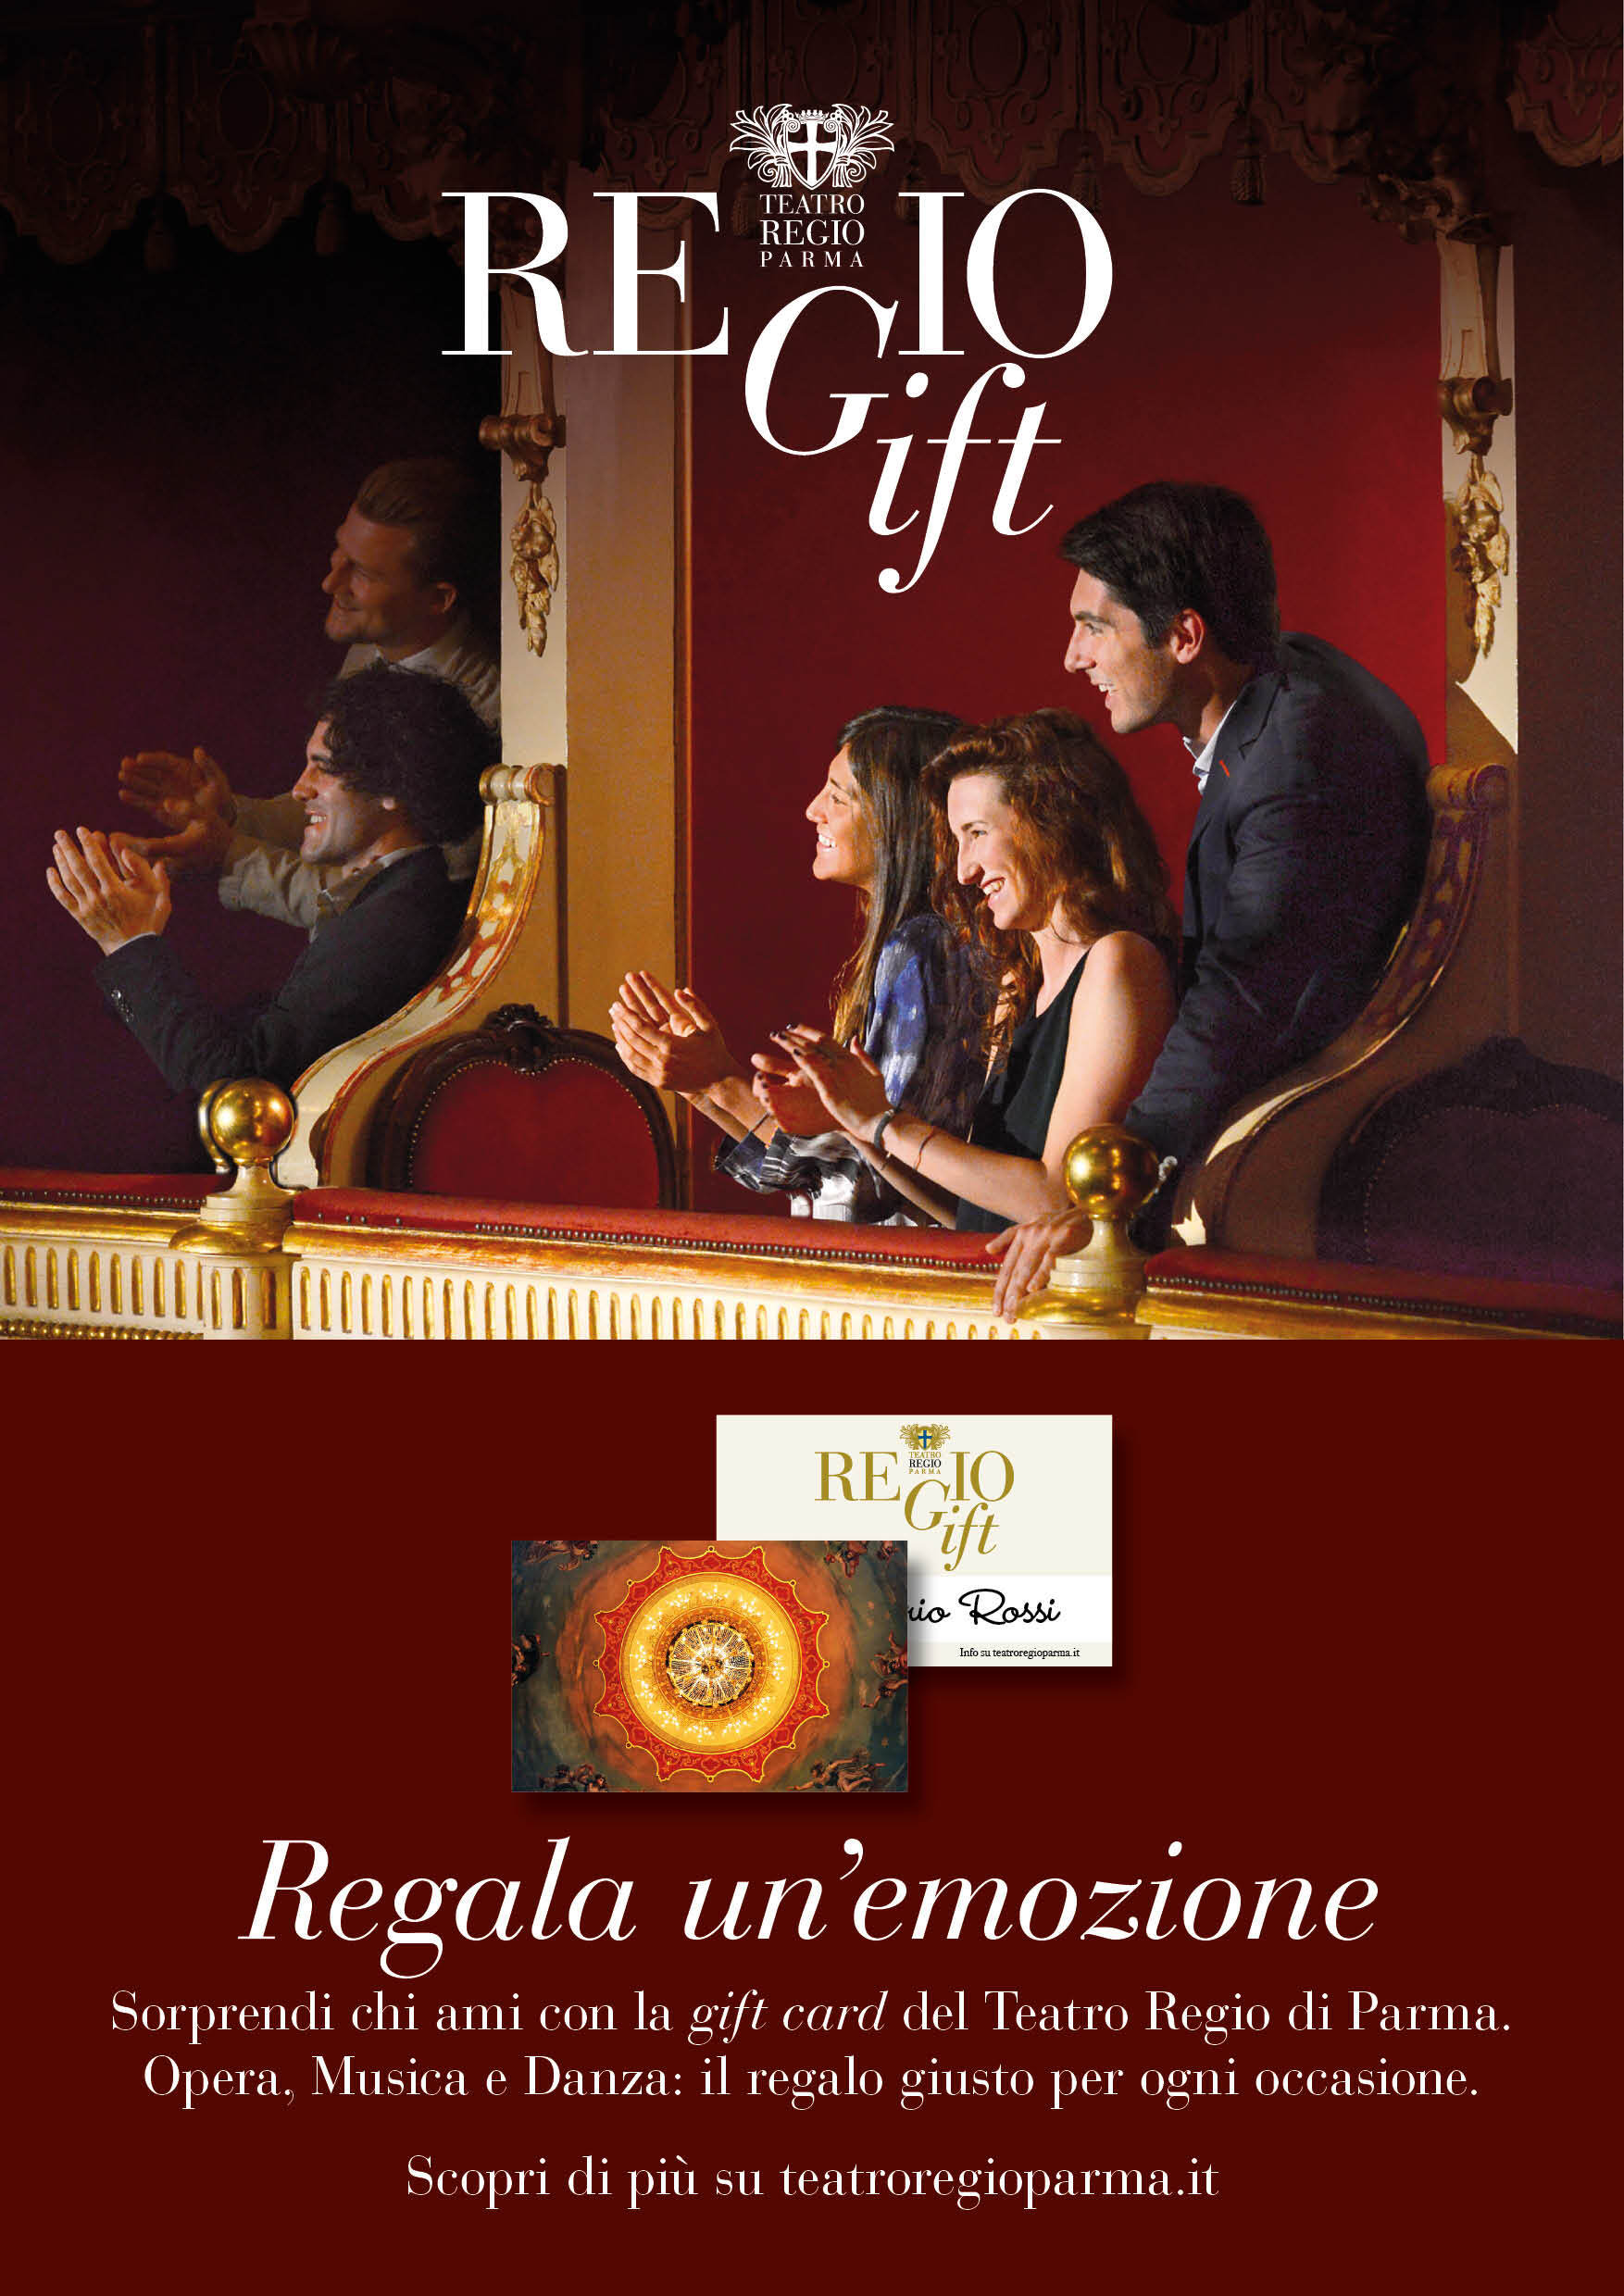 REGIOGIFT  REGALA UN’EMOZIONE! La carta regalo del Teatro Regio di Parma per vivere emozionanti serate di Opera, Musica, Danza